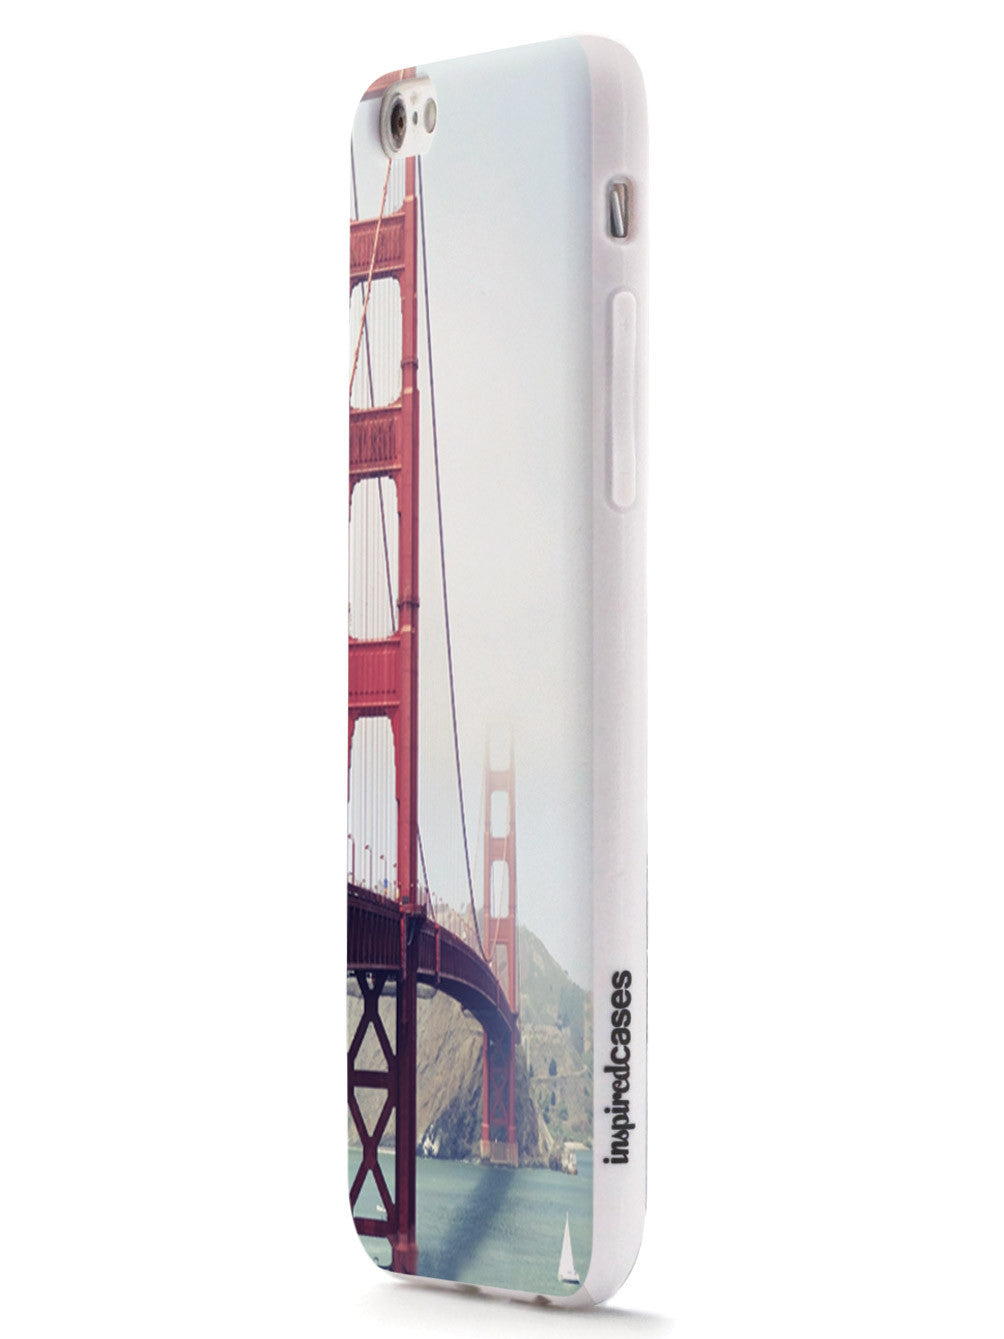 Golden Gate Bridge Photo Case